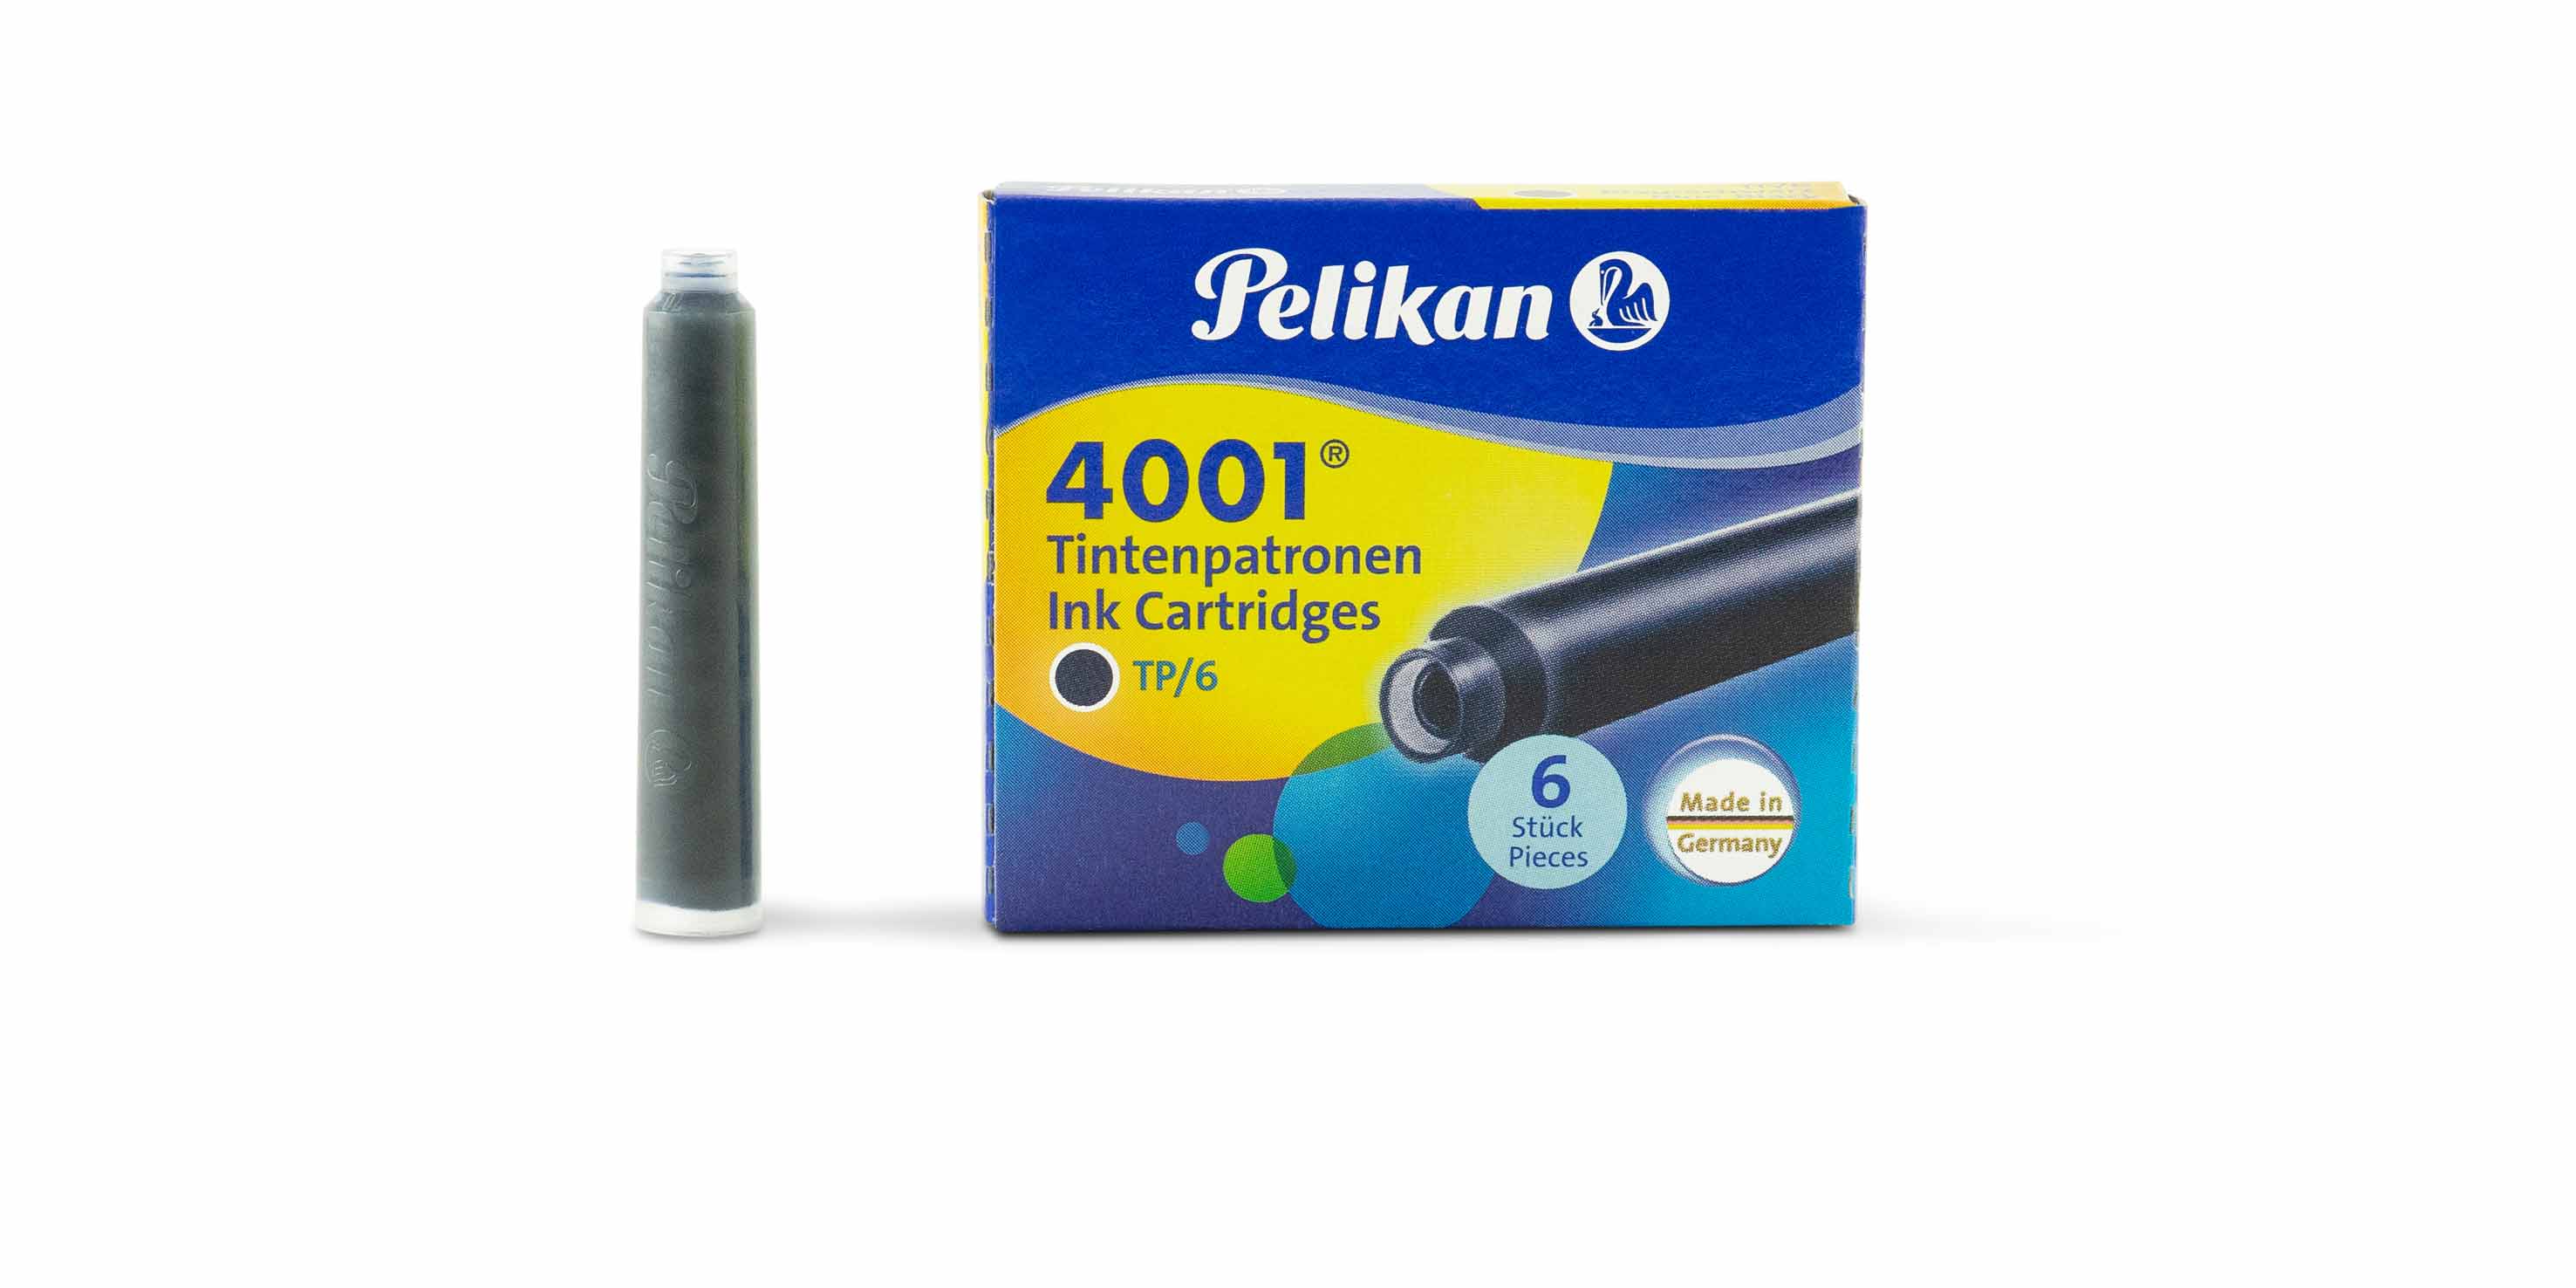 Nachtvlek definitief bijwoord Pelikan Ink Cartridges standard blue black | Mostwanted Pens